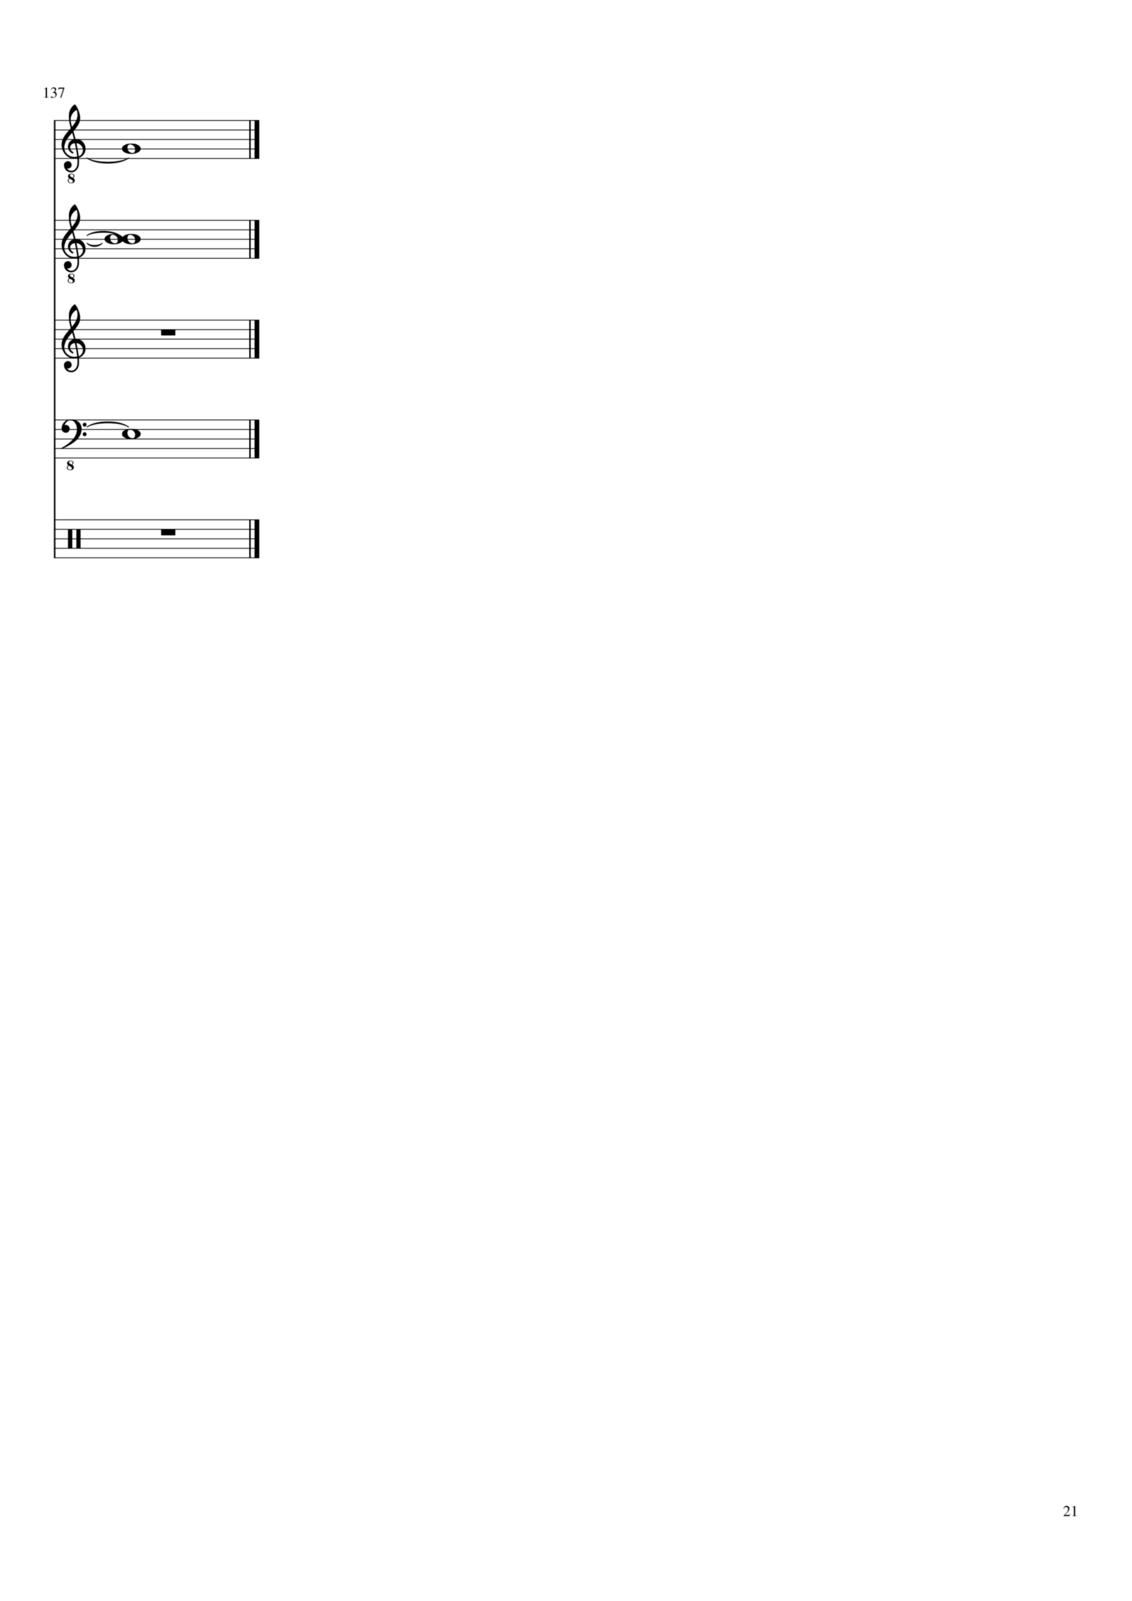 Vospominaniya o byiloy lyubvi slide, Image 21